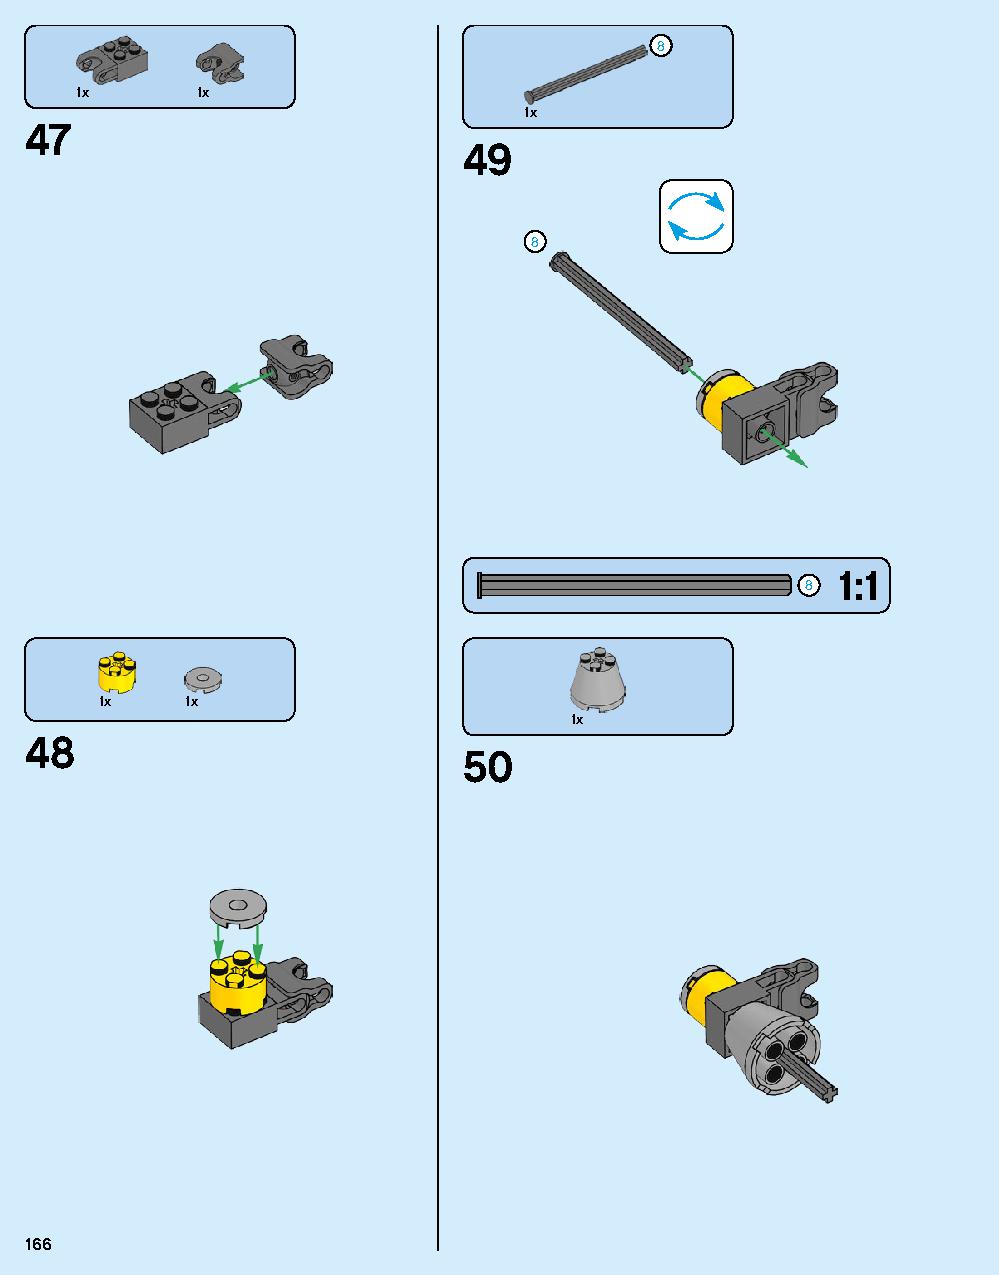 ハルクバスター：ウルトロン・エディション 76105 レゴの商品情報 レゴの説明書・組立方法 166 page